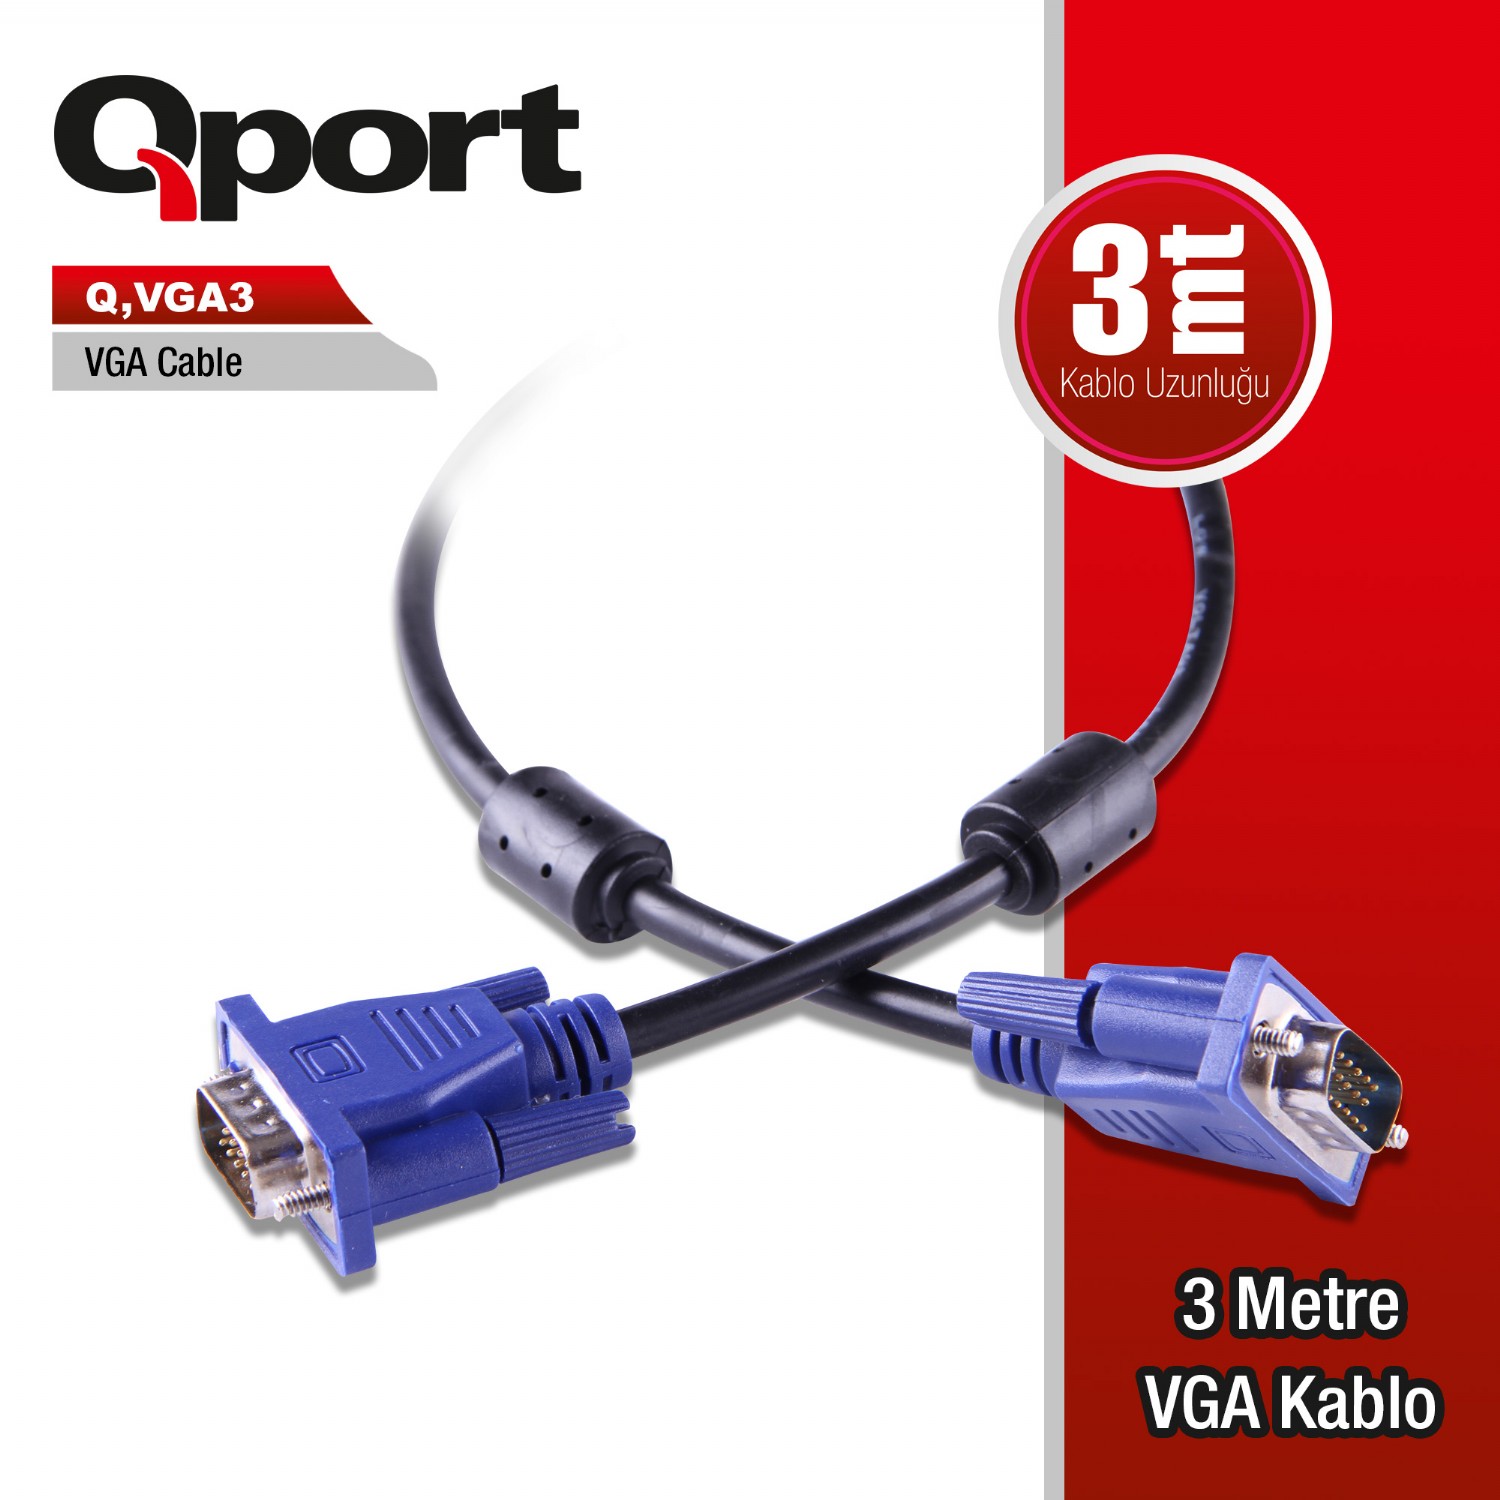 Q-VGA3